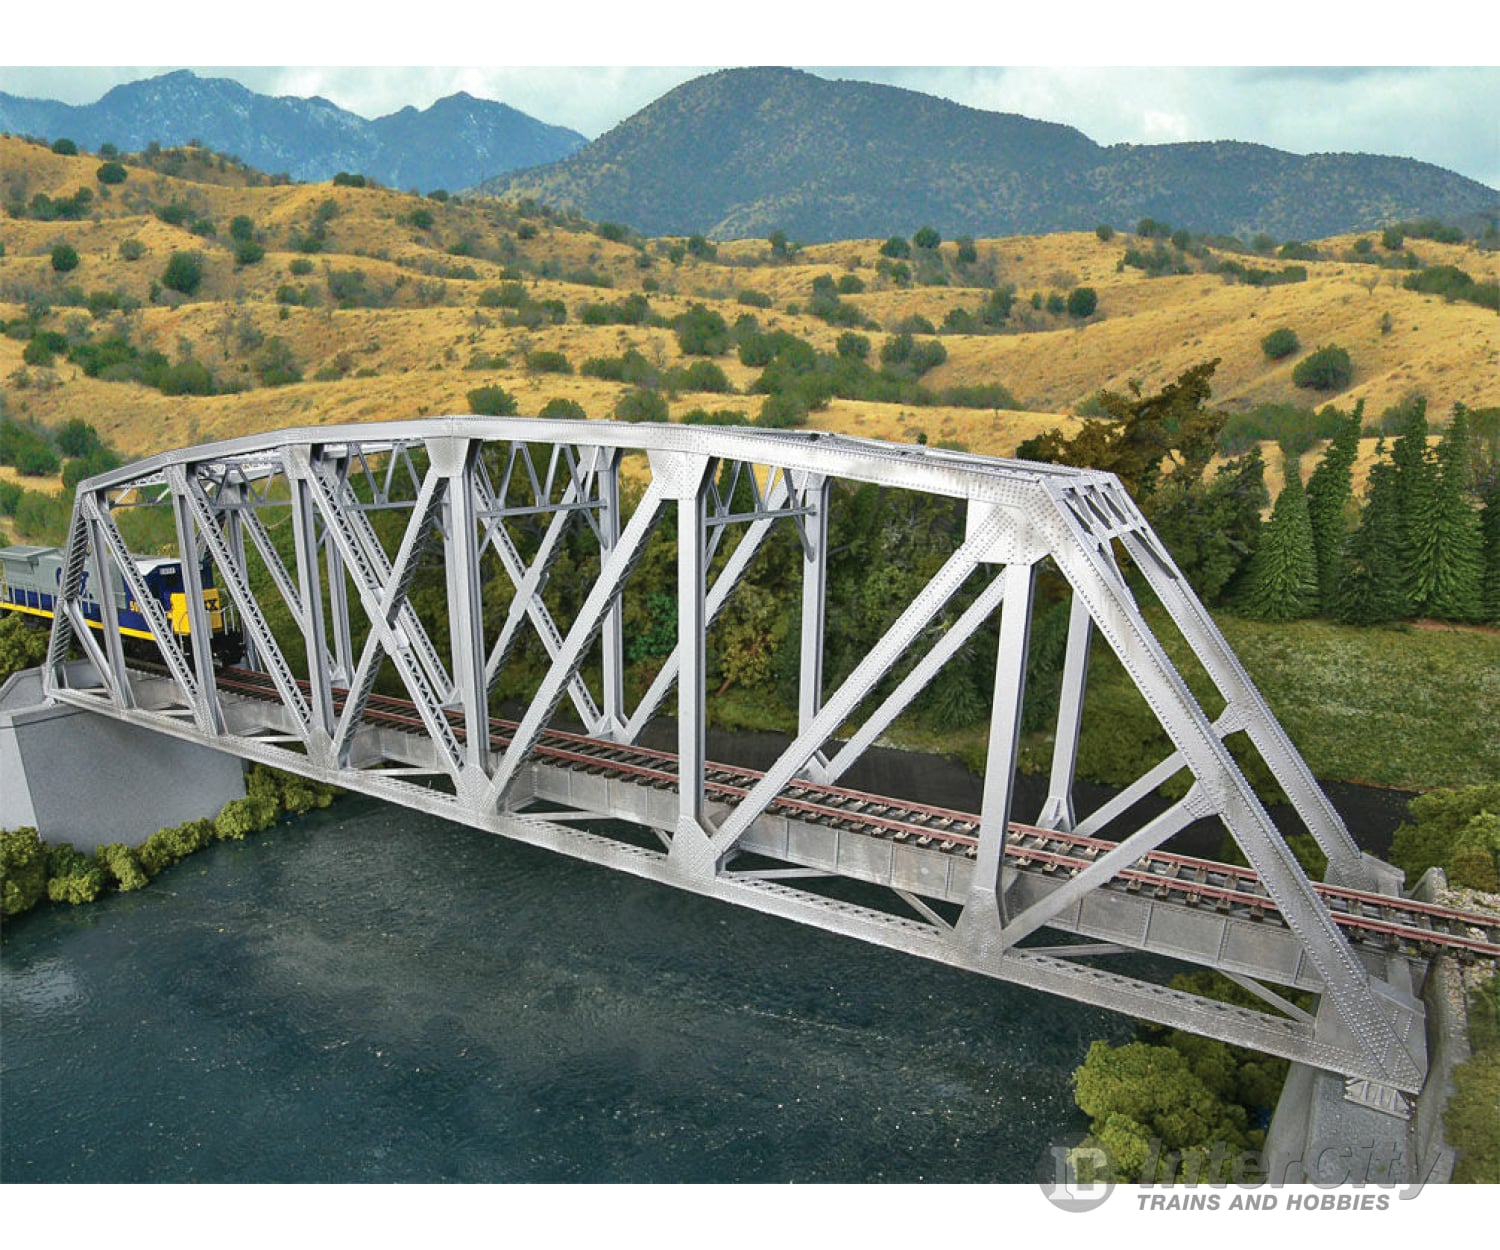 Walthers Cornerstone Ho 4521 Arched Pratt Truss Railroad Bridge -- Single-Track - Kit 23 X 3-1/16